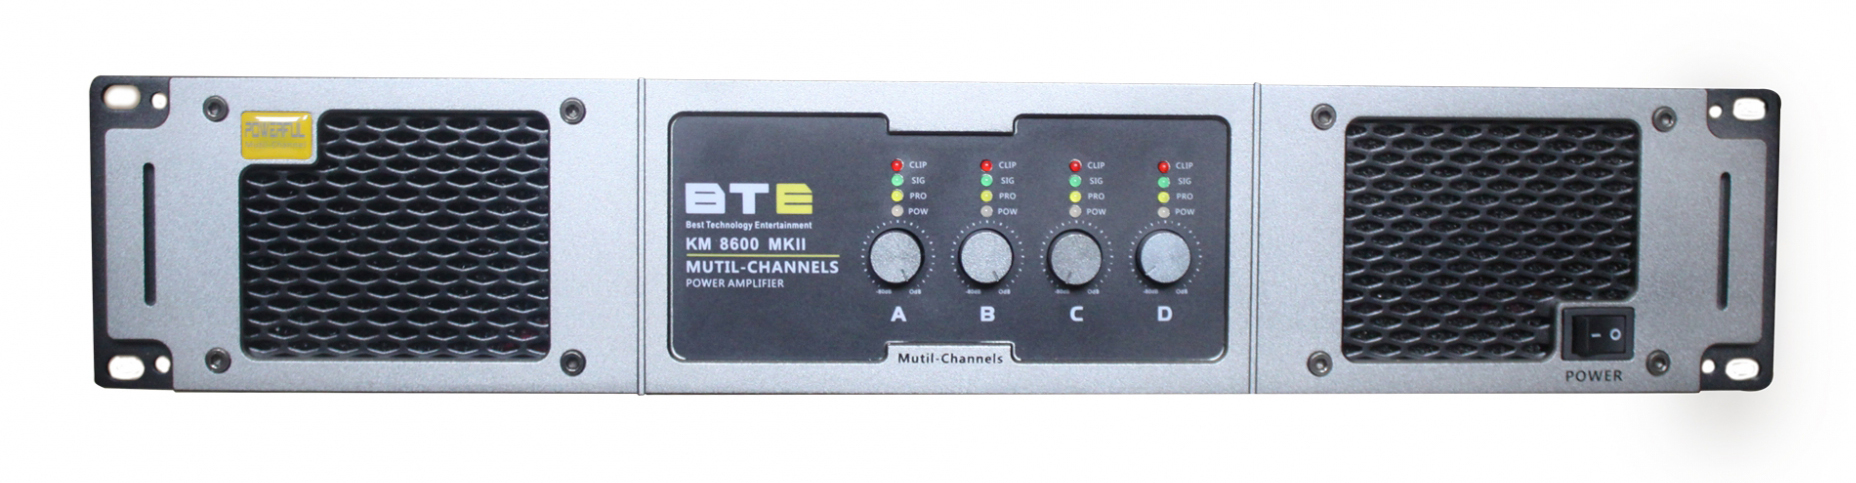 Cục Đẩy Công suất 4 kênh  BTE KM8600 MKII